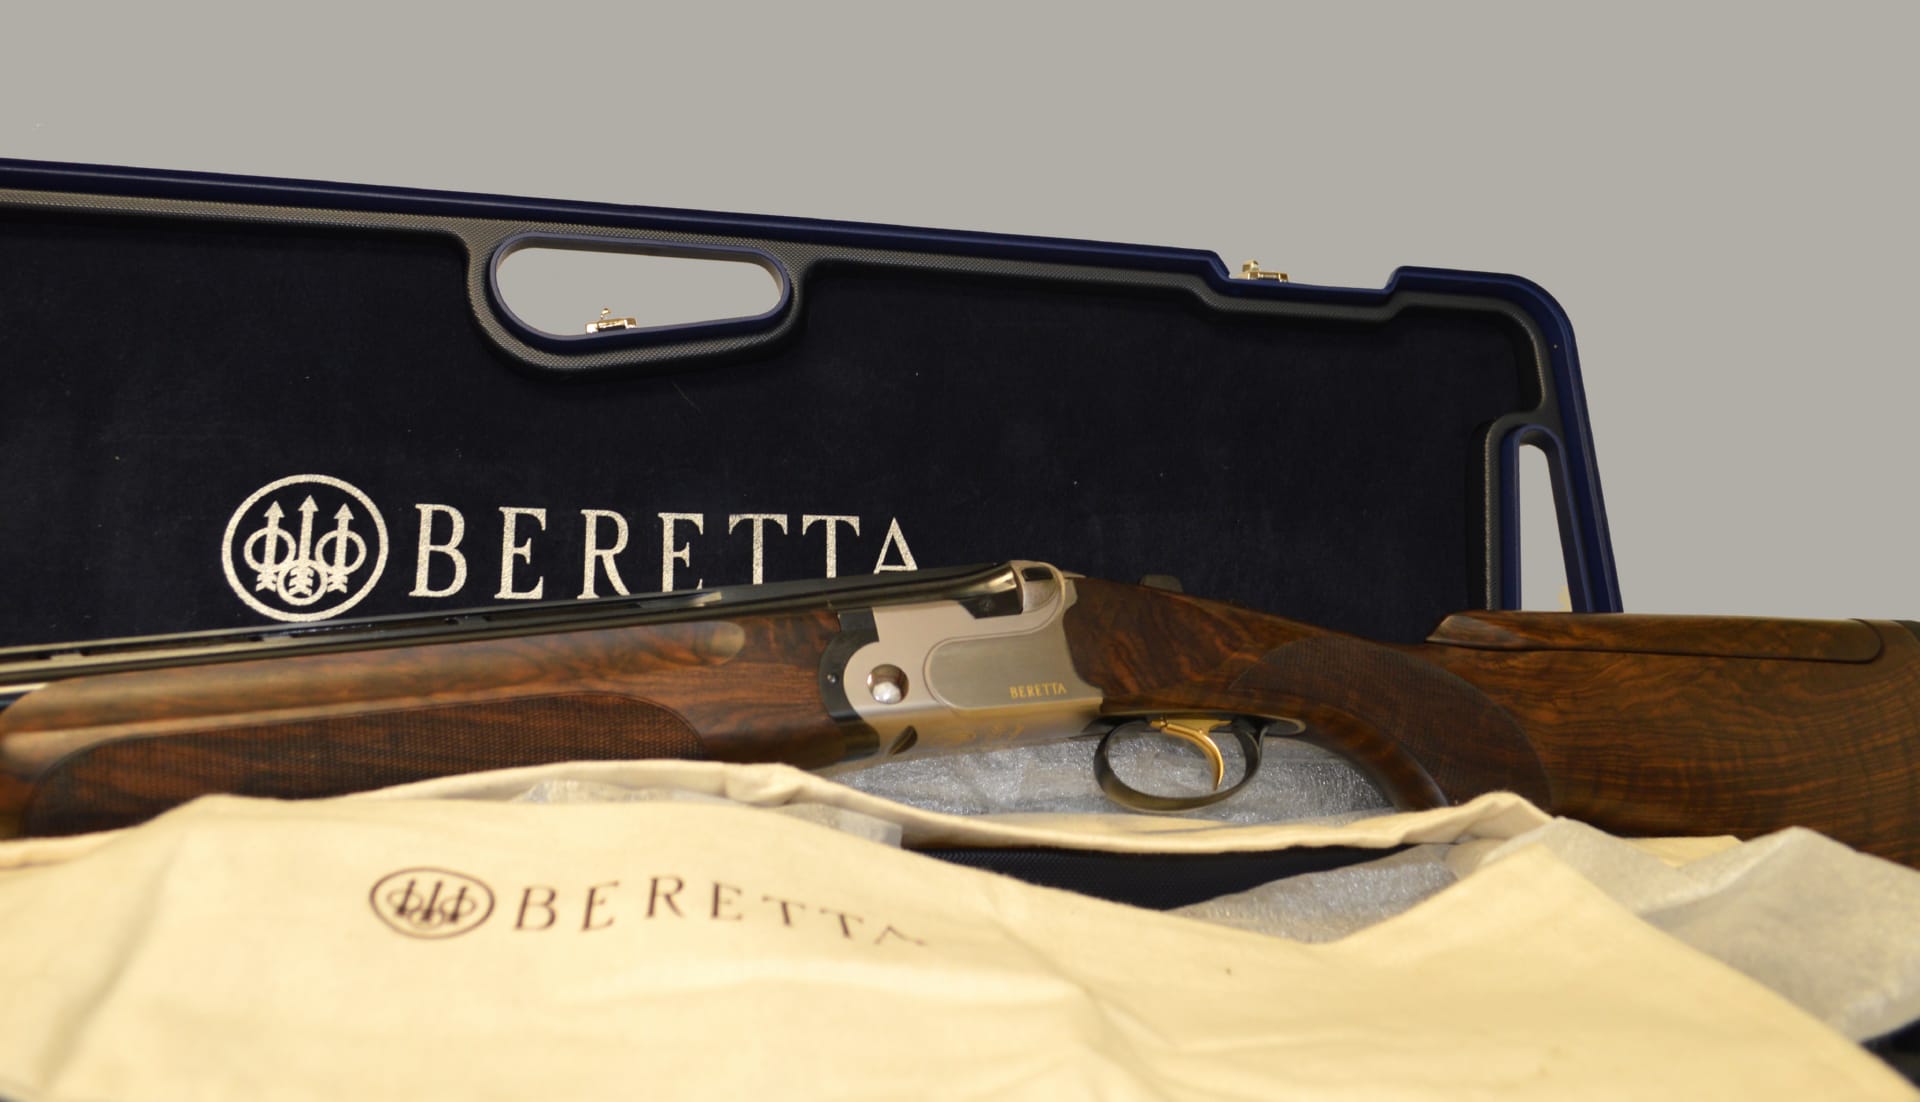 Beretta Shotgun at 1152 x 864 size wallpapers HD quality